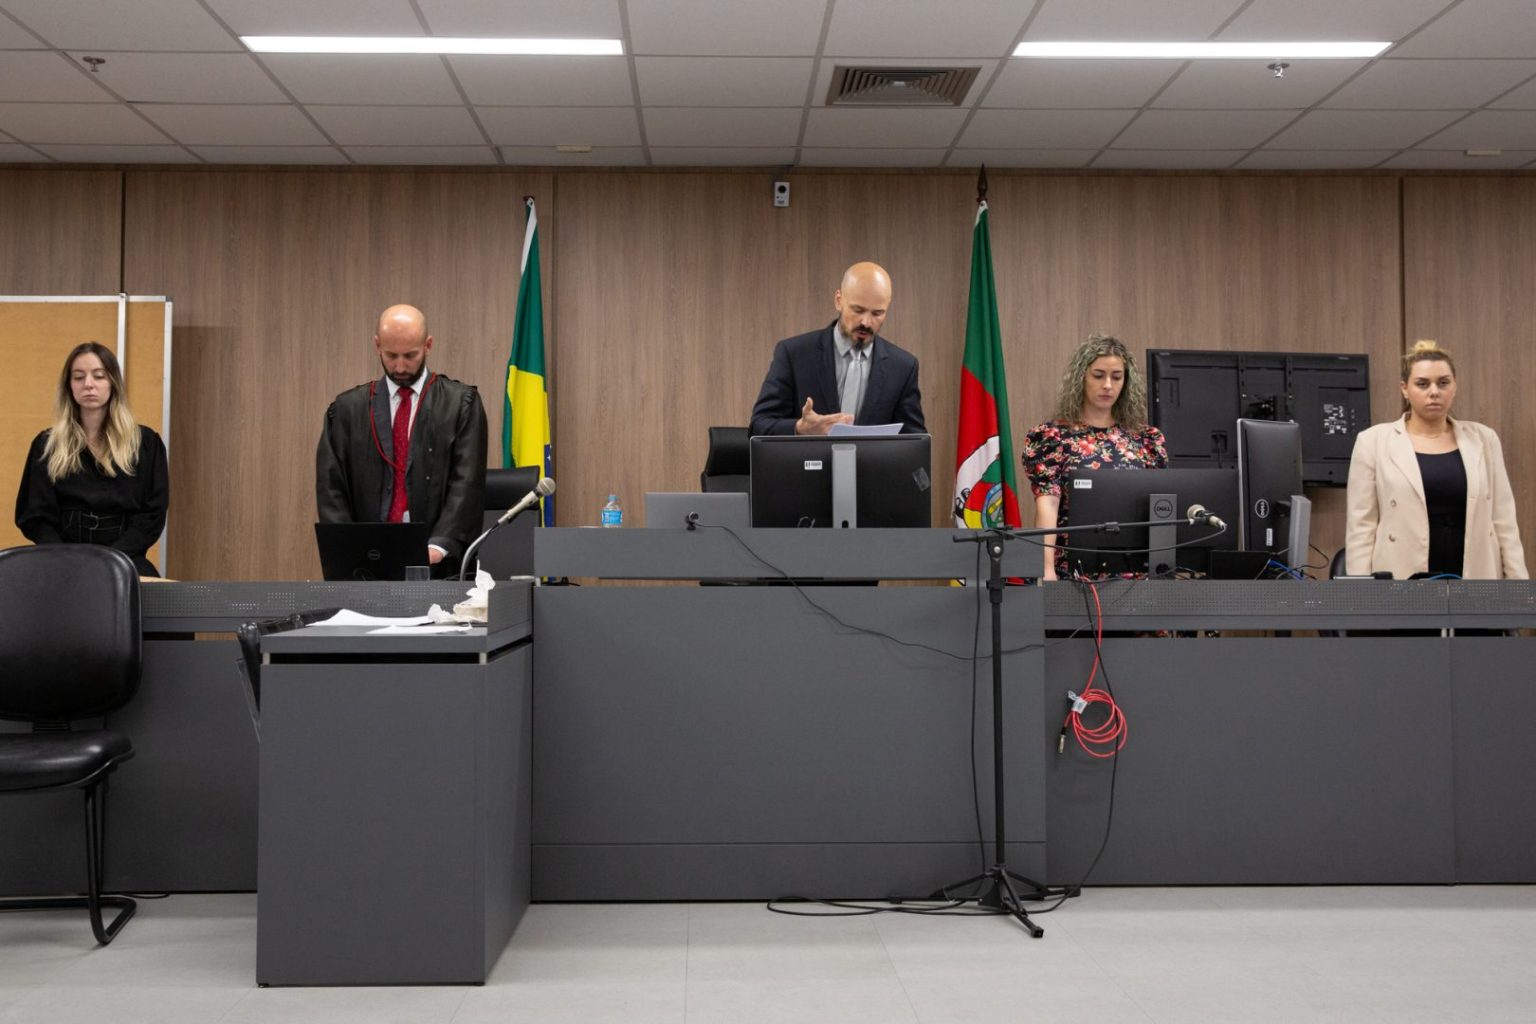 O juiz Marcos Braga Salgado Martins presidiu o julgamento, que durou dois dias Foto: Juliano Verardi/TJRS